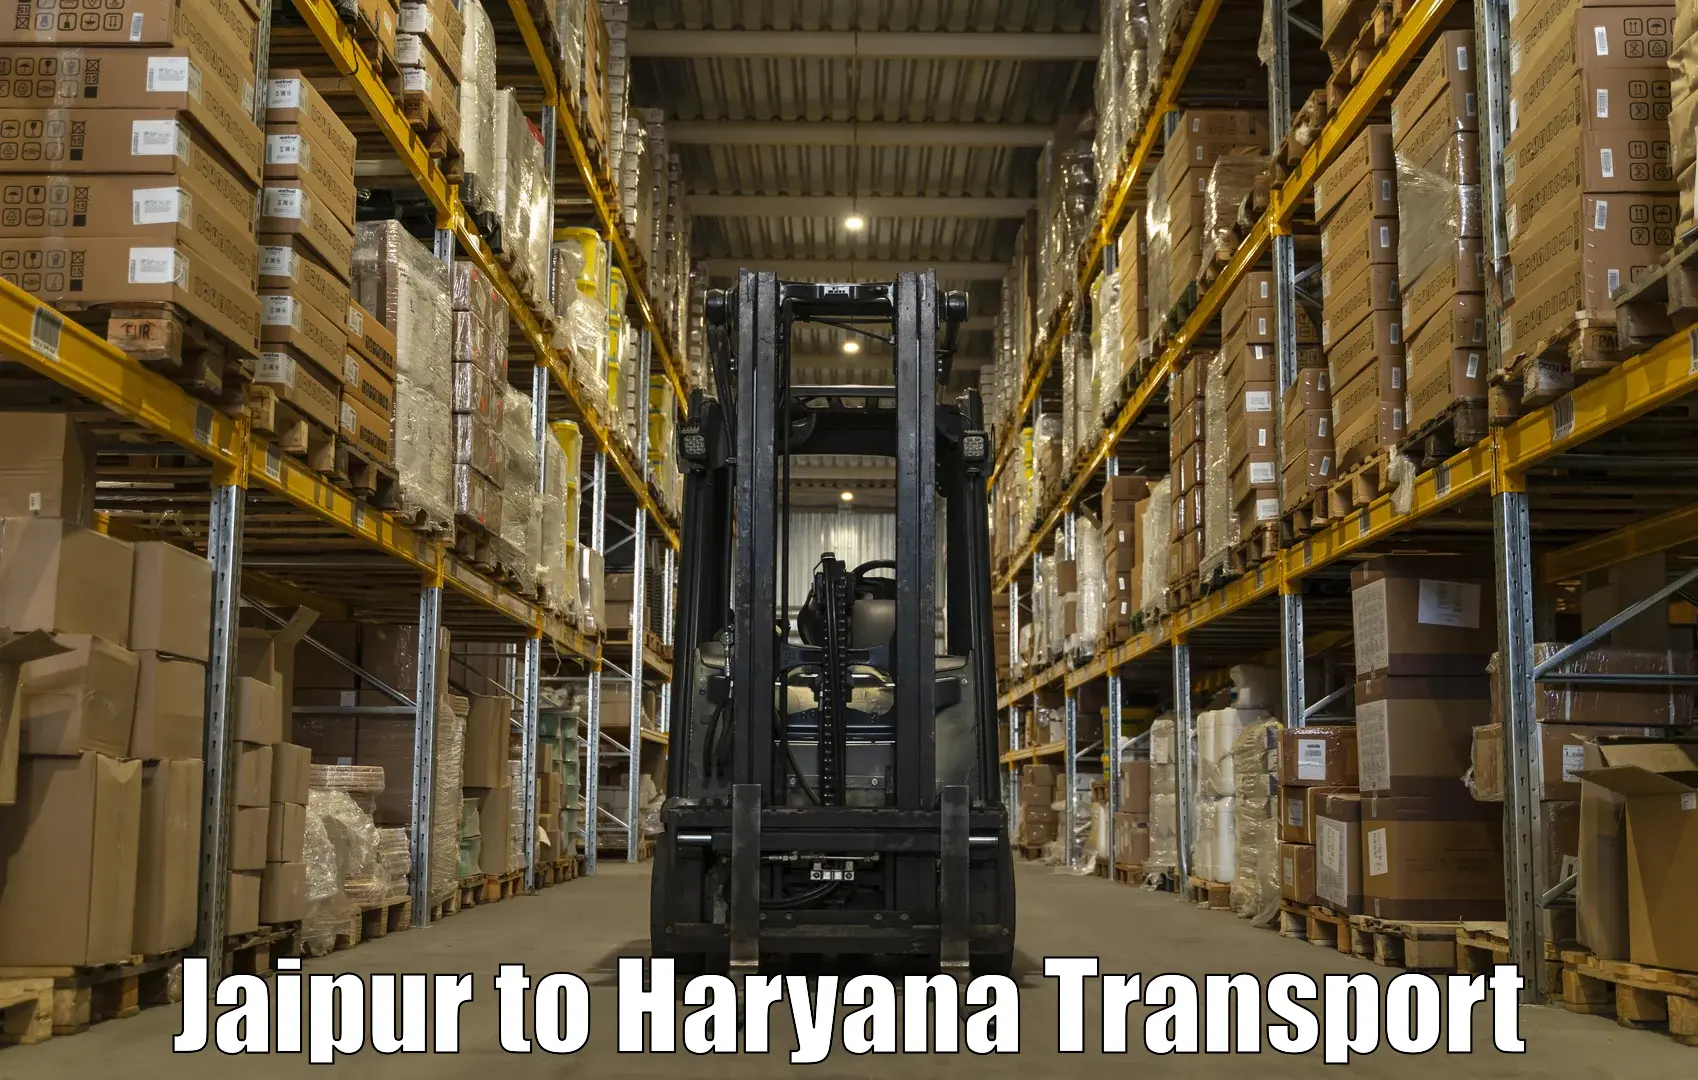 Express transport services Jaipur to Hansi